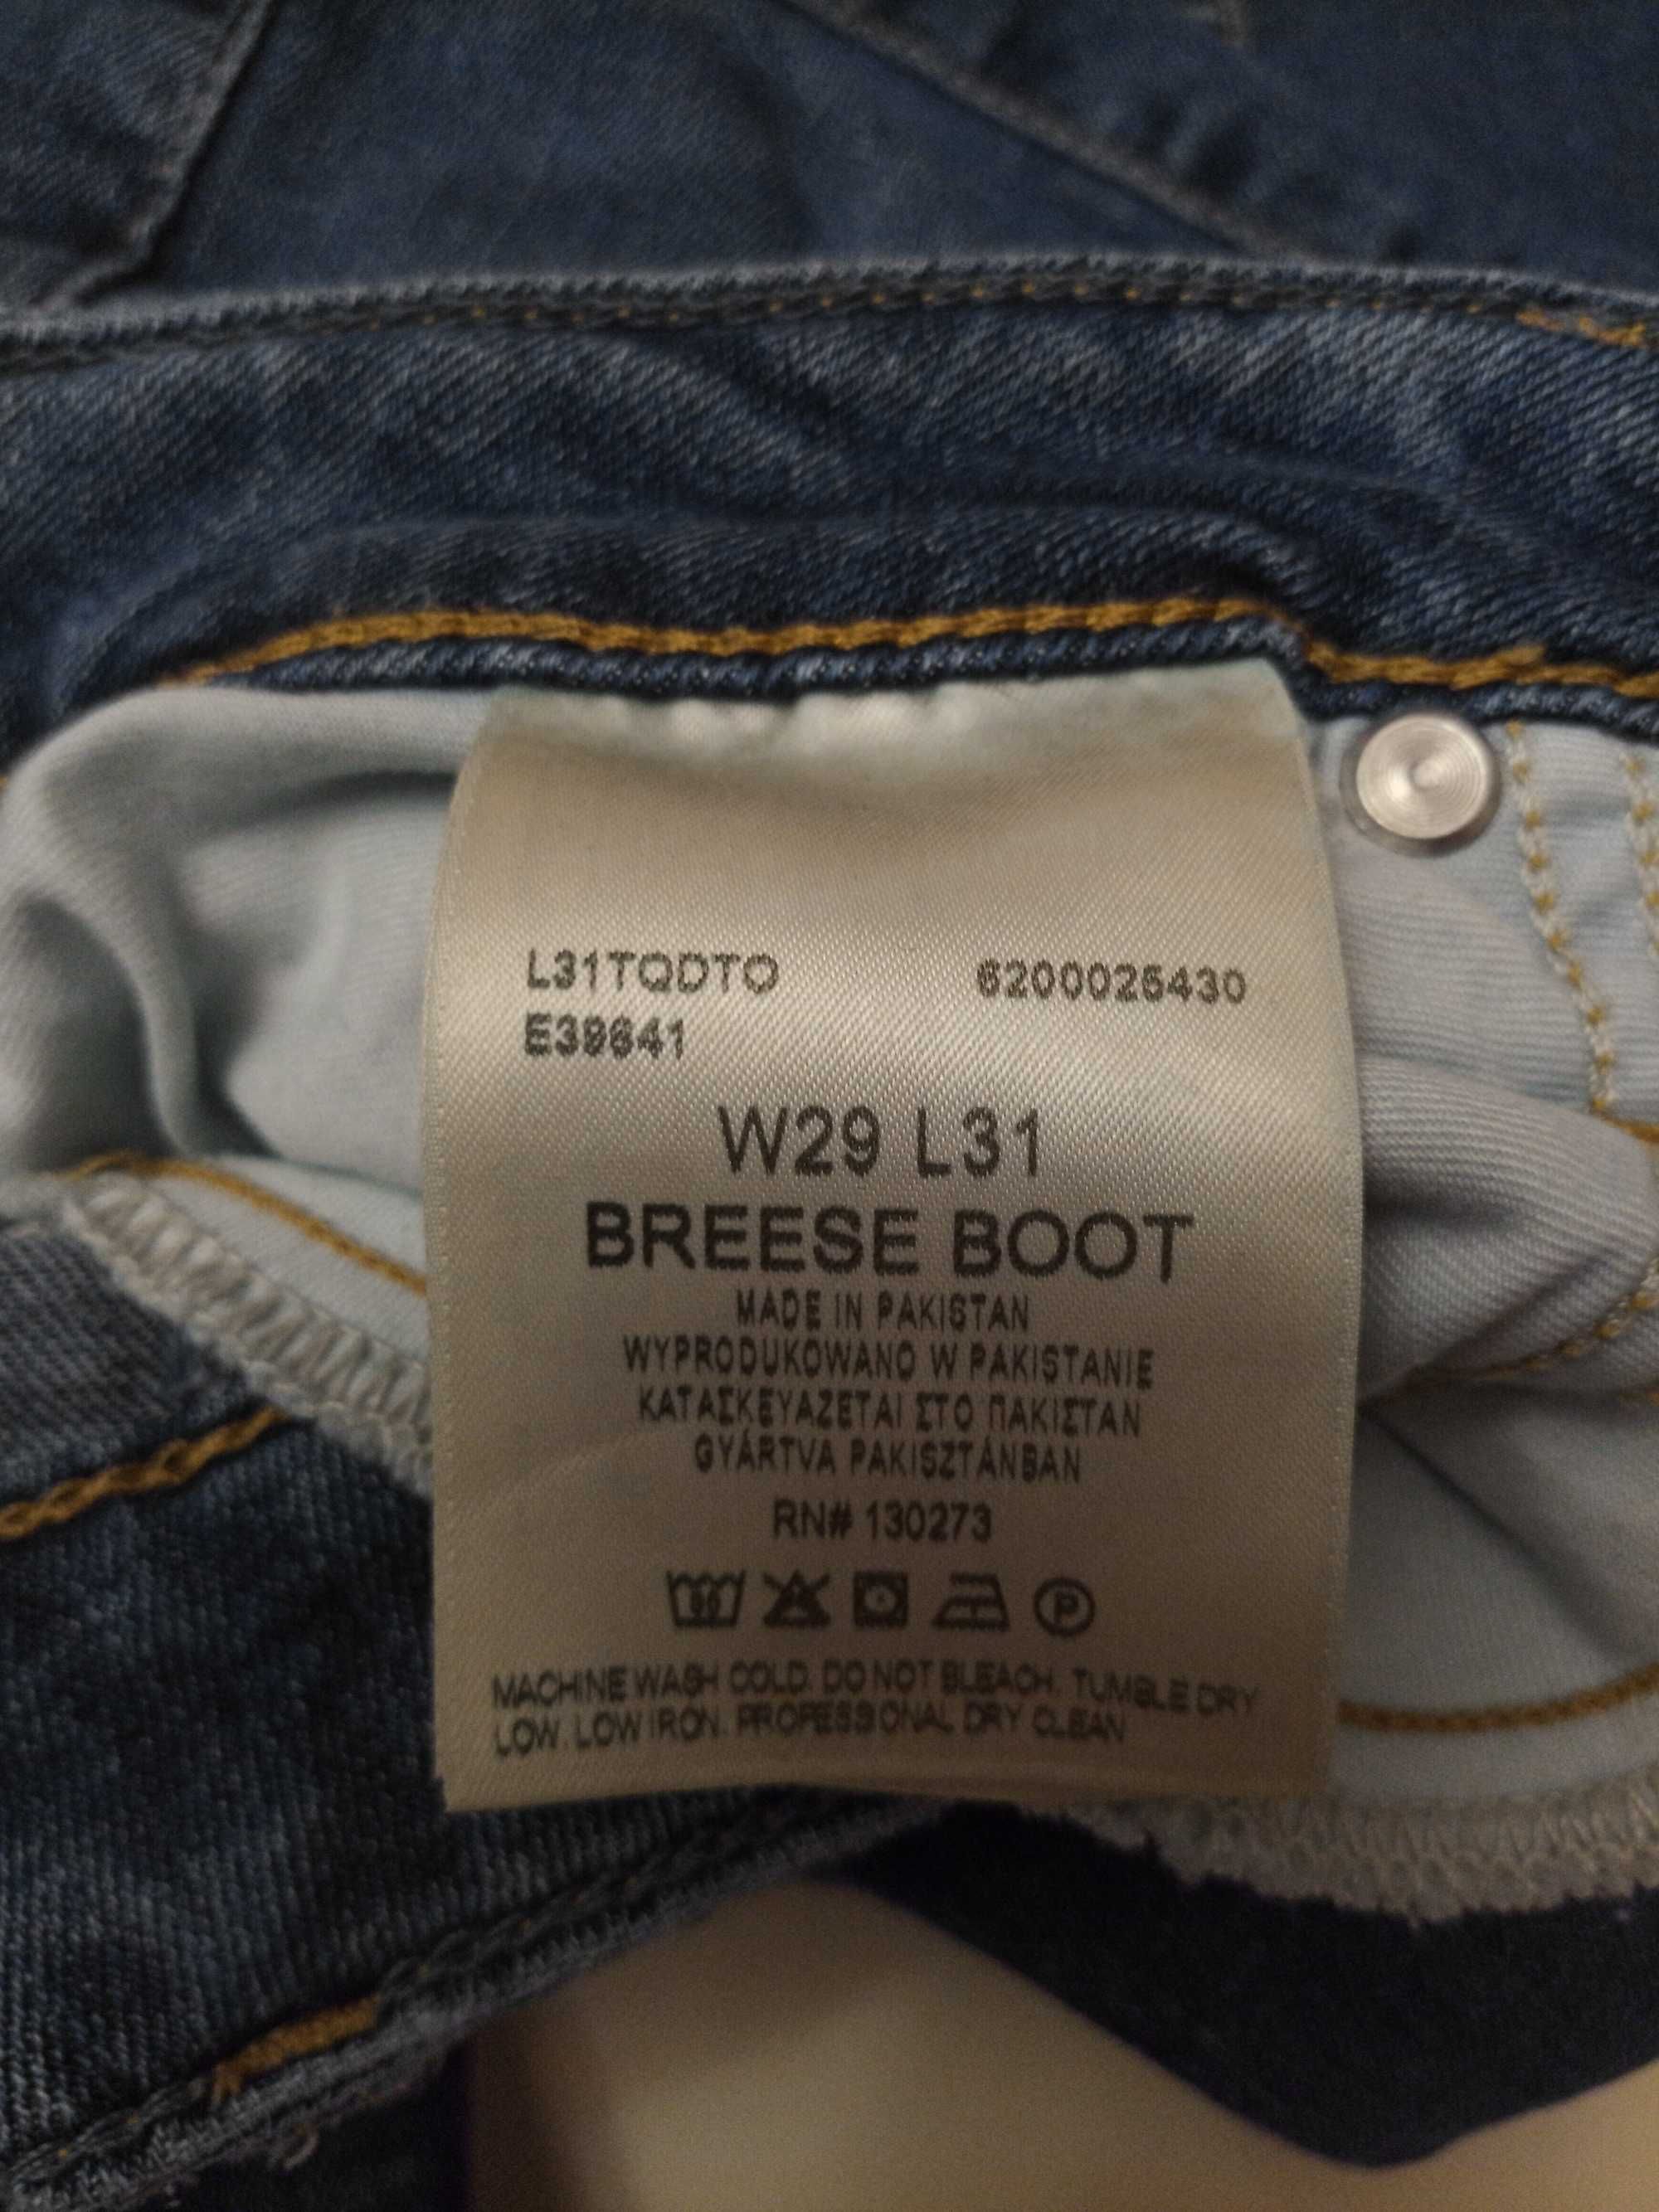 Жіночі джинси Lee, оригінал, W  29 L 31.